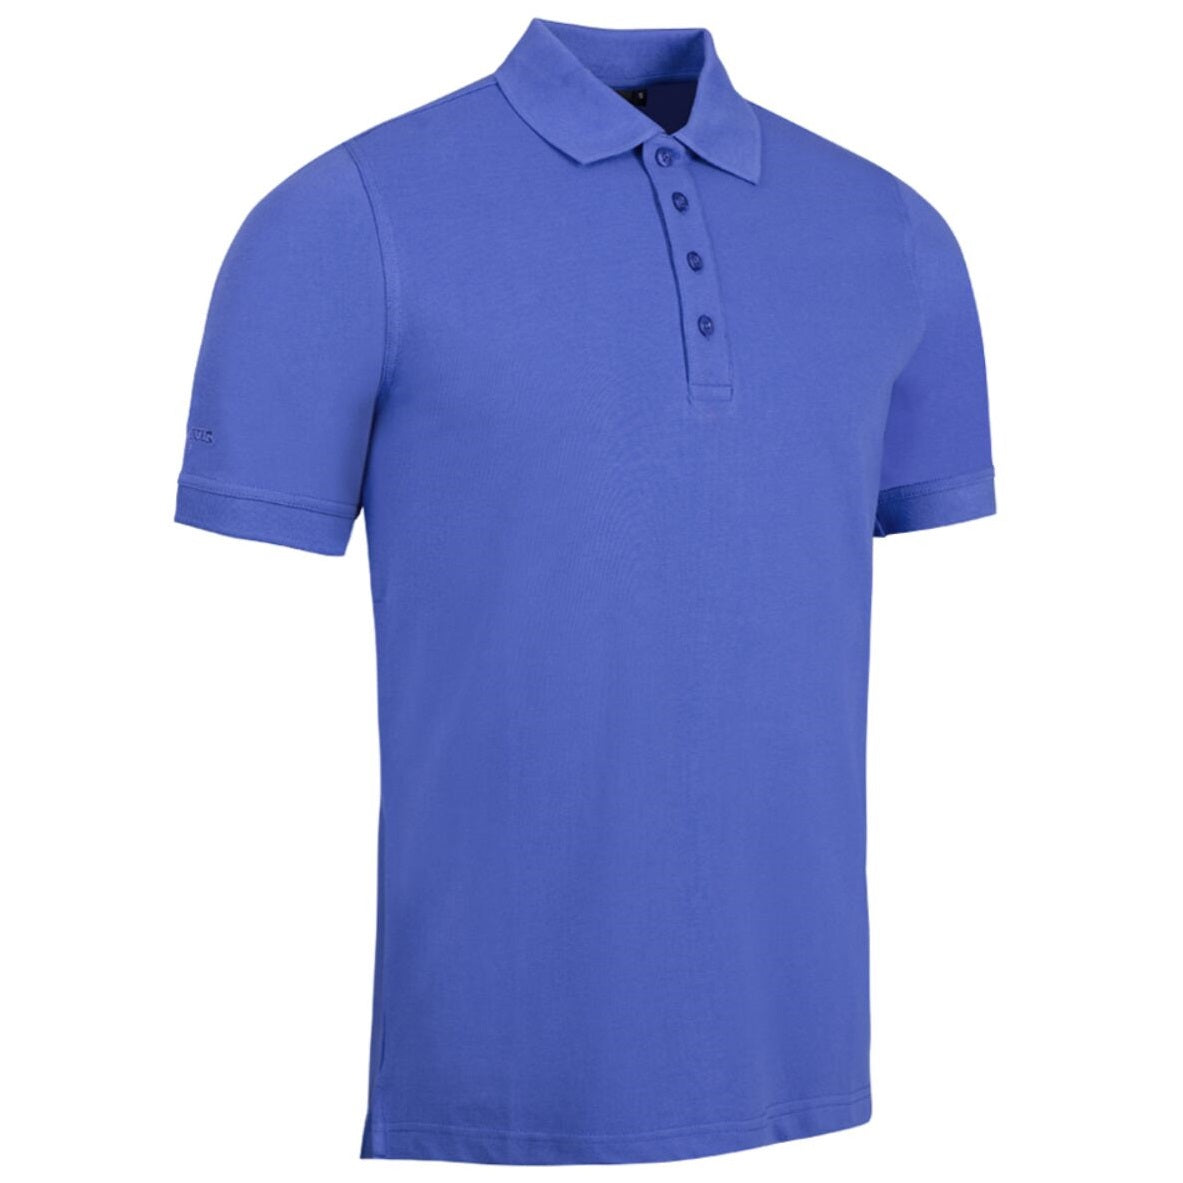 GLENMUIR Kinloch Cotton Pique Polo Shirt - Mens - Tahiti Blue